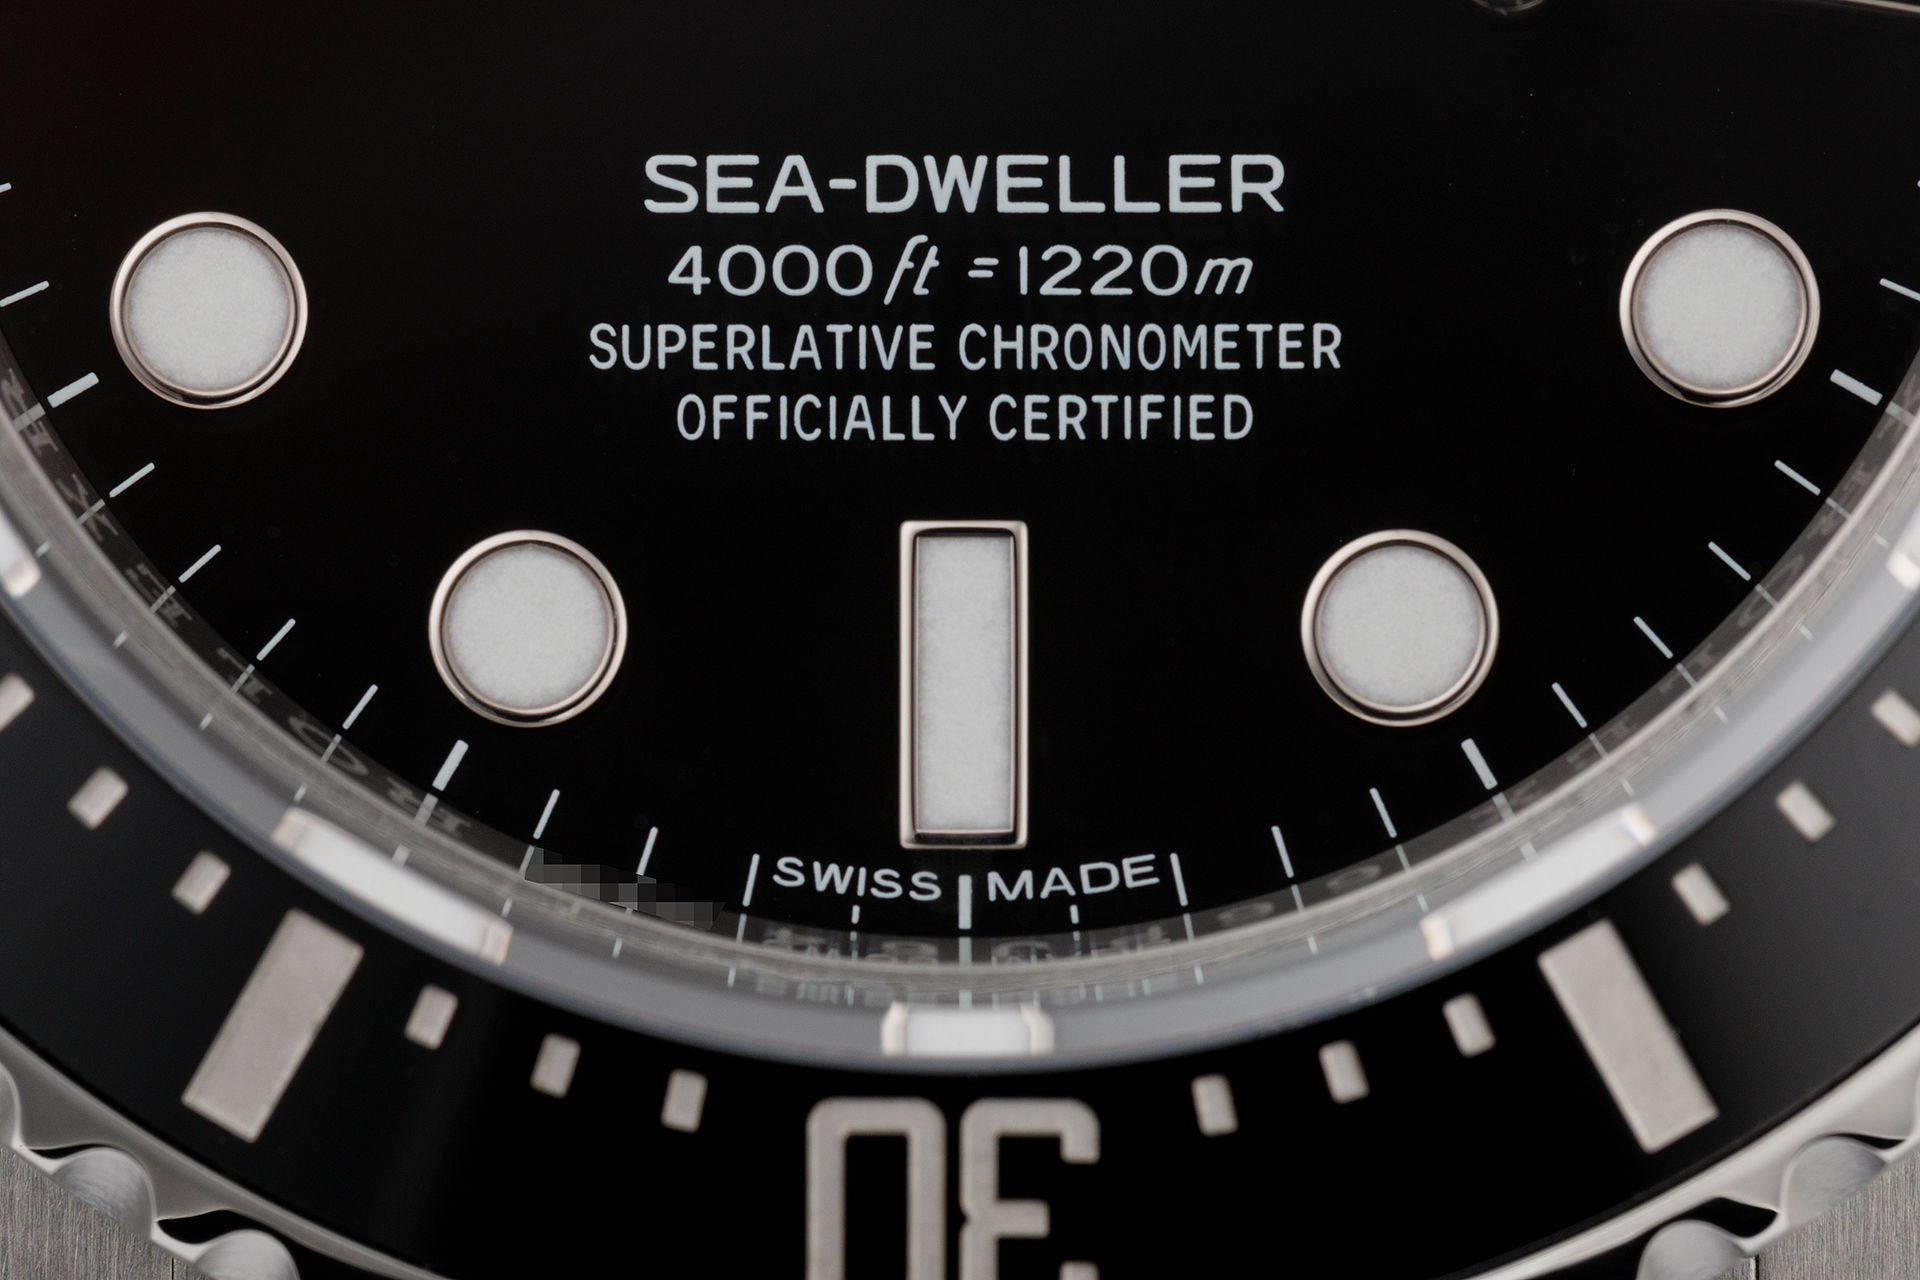 ref 116600 | 'Complete Set Cerachrom' | Rolex Sea-Dweller 4000